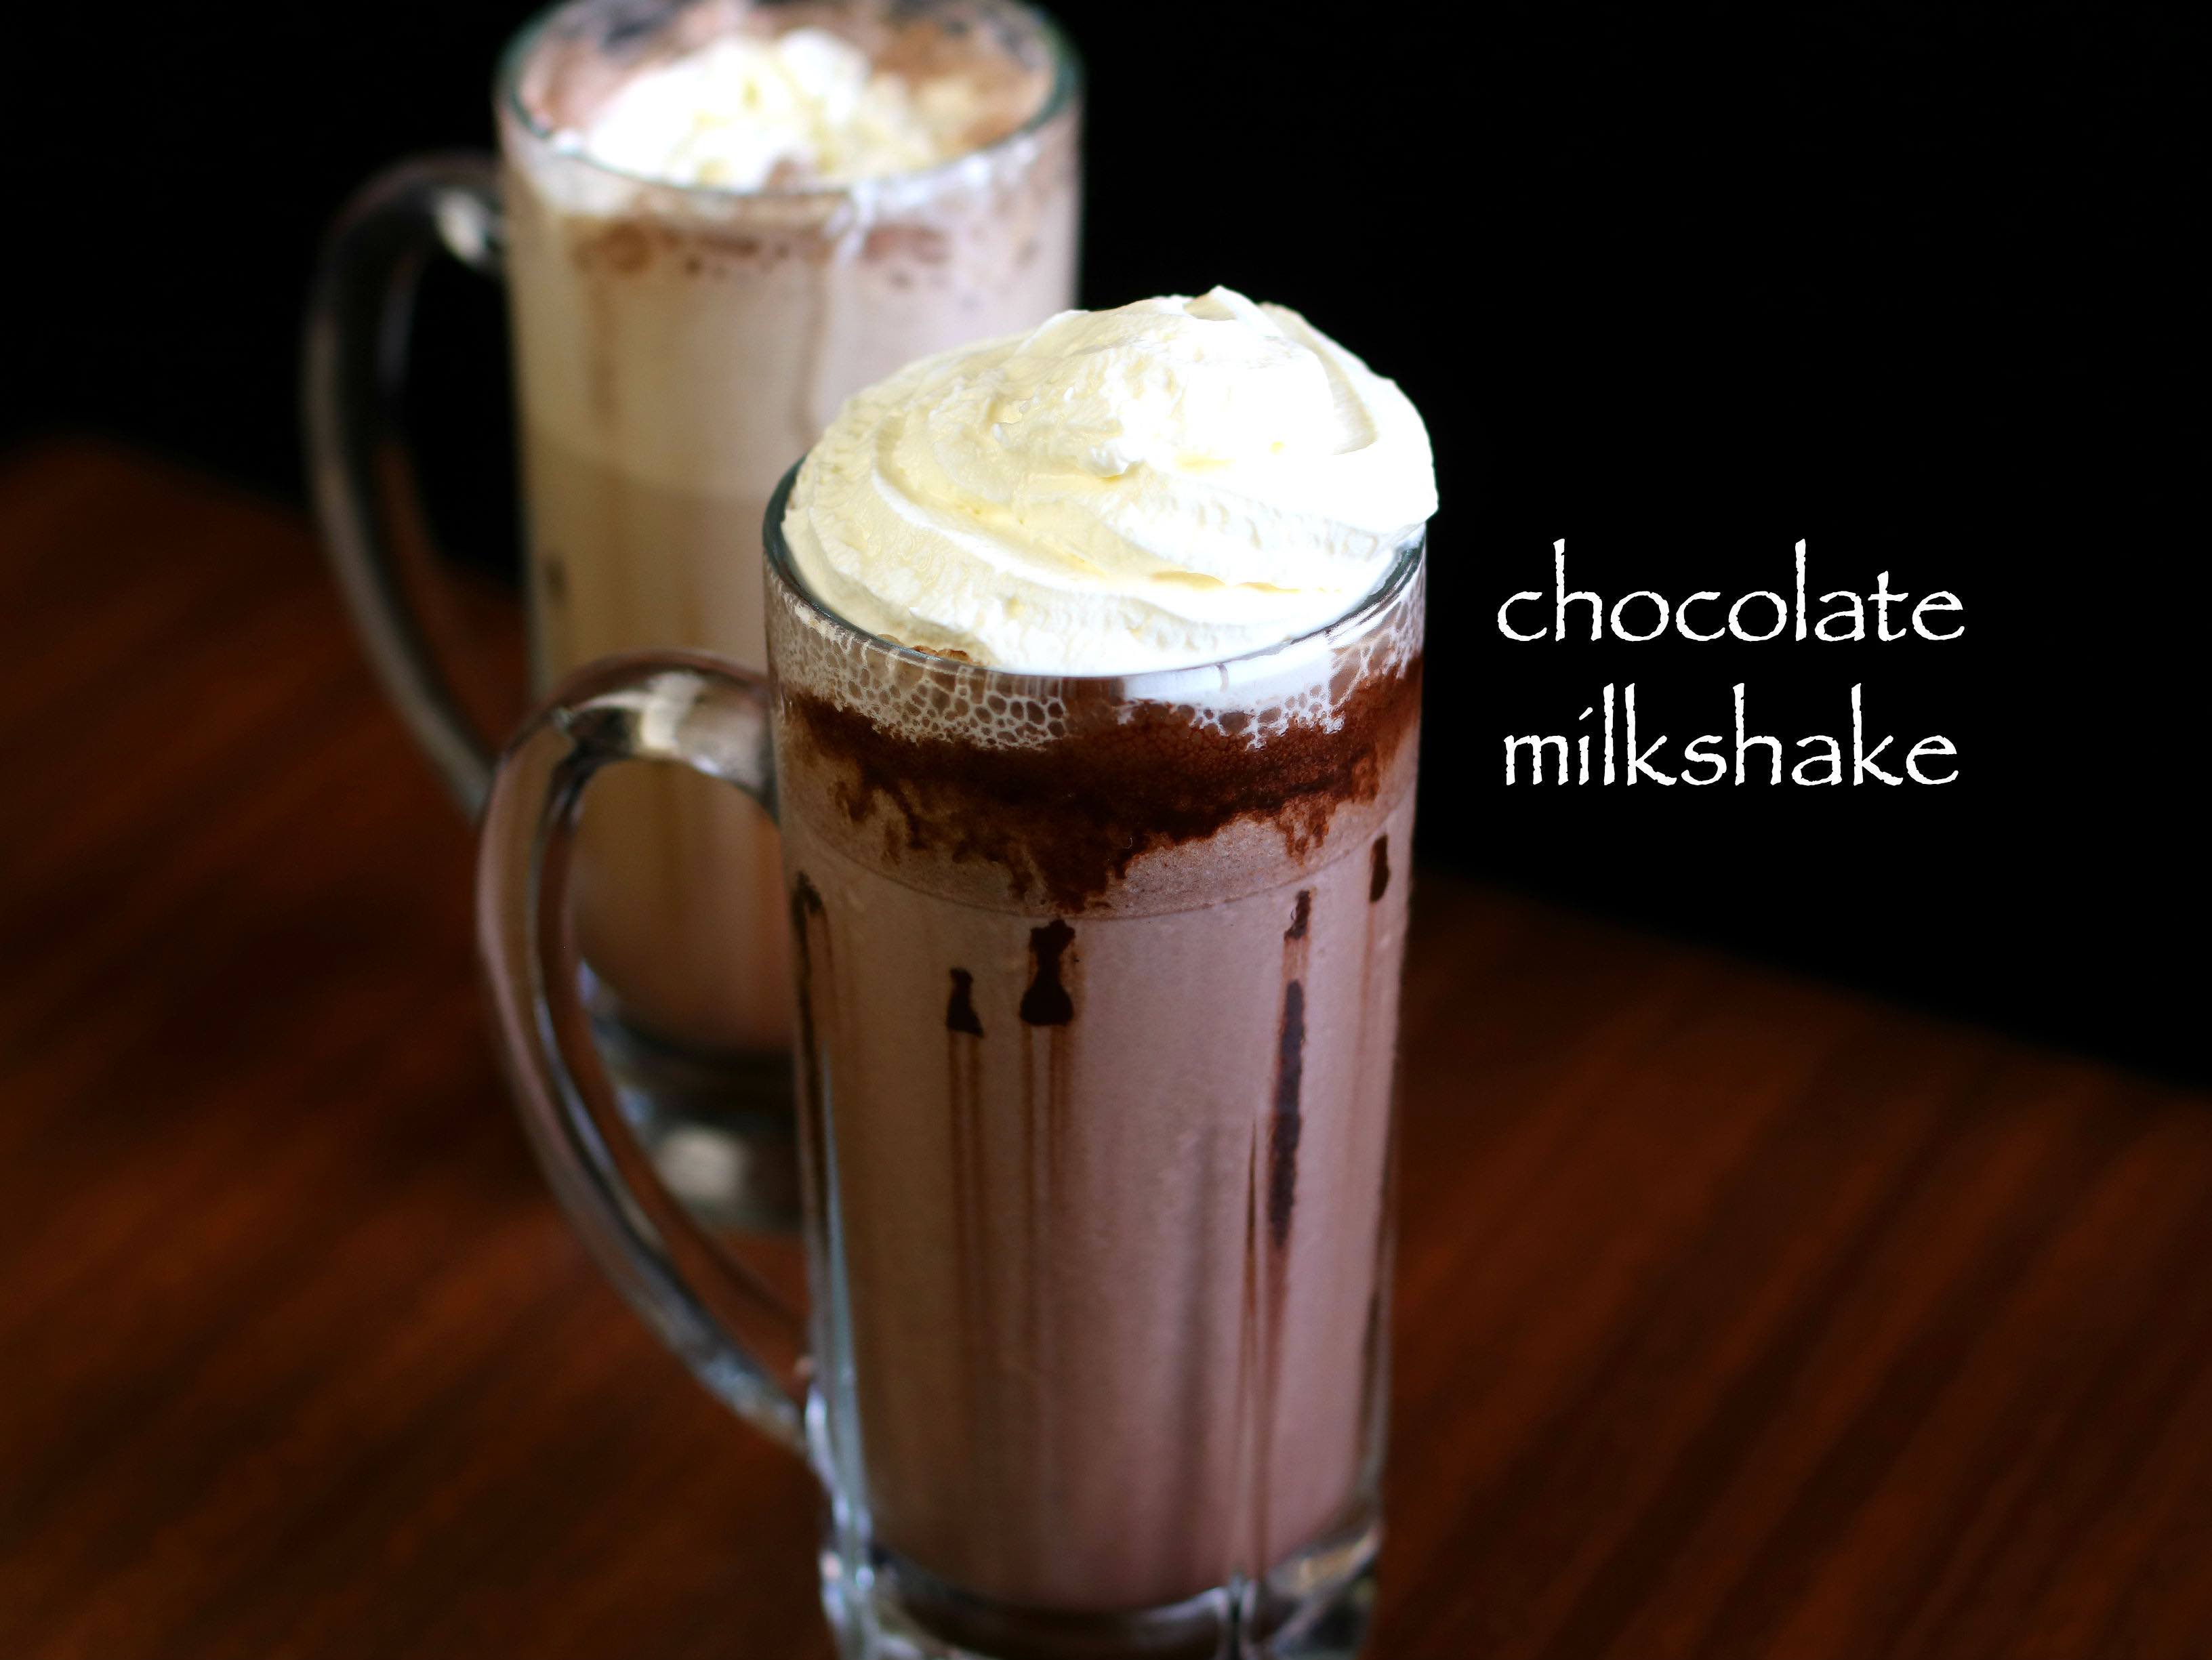 Choco milk shake